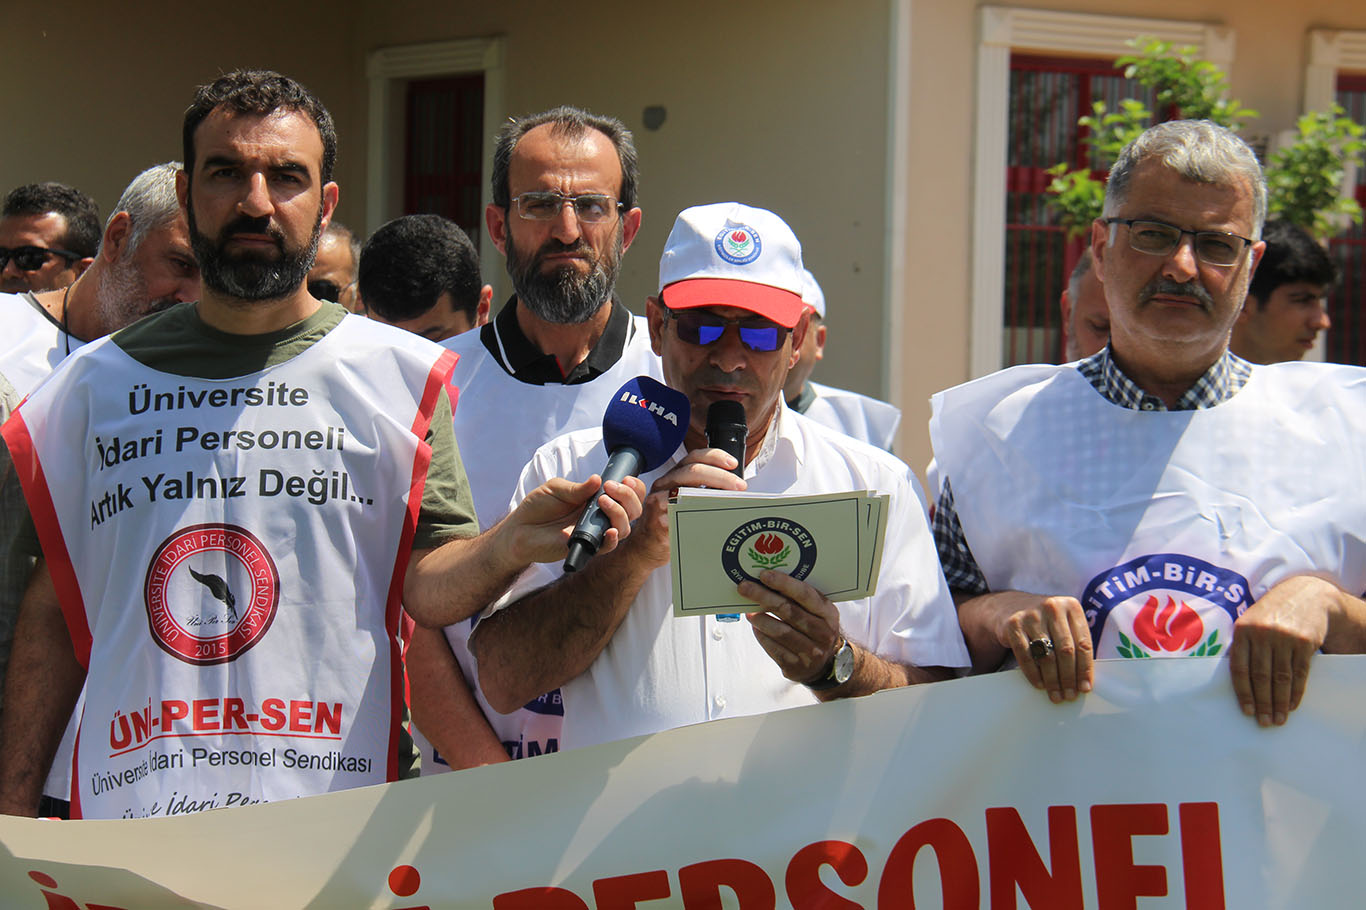 Diyarbakır Eğitim-Bir-Sen'den "İdari personellere görev vermeme" kararına tepki